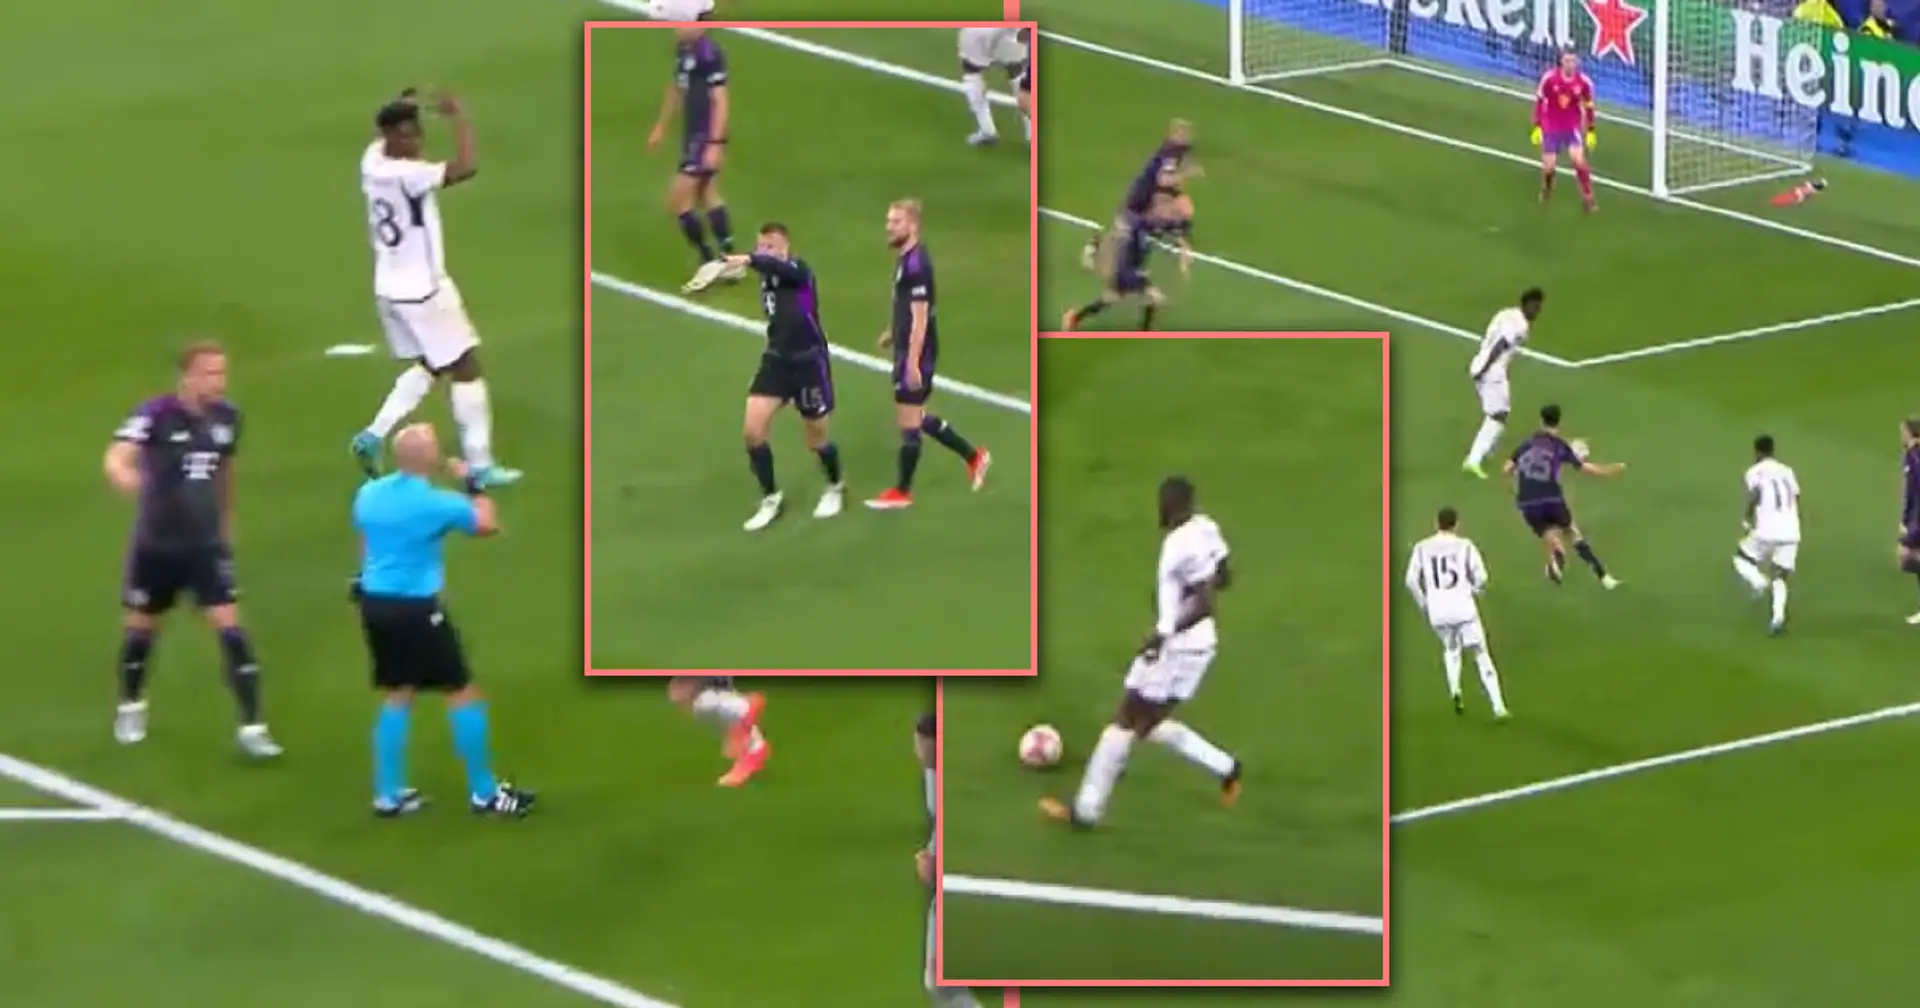 Neue Regel: Real Madrid darf mit zwei verschiedenen Bällen gleichzeitig angreifen - auch das haben die Schiedsrichter nicht gesehen